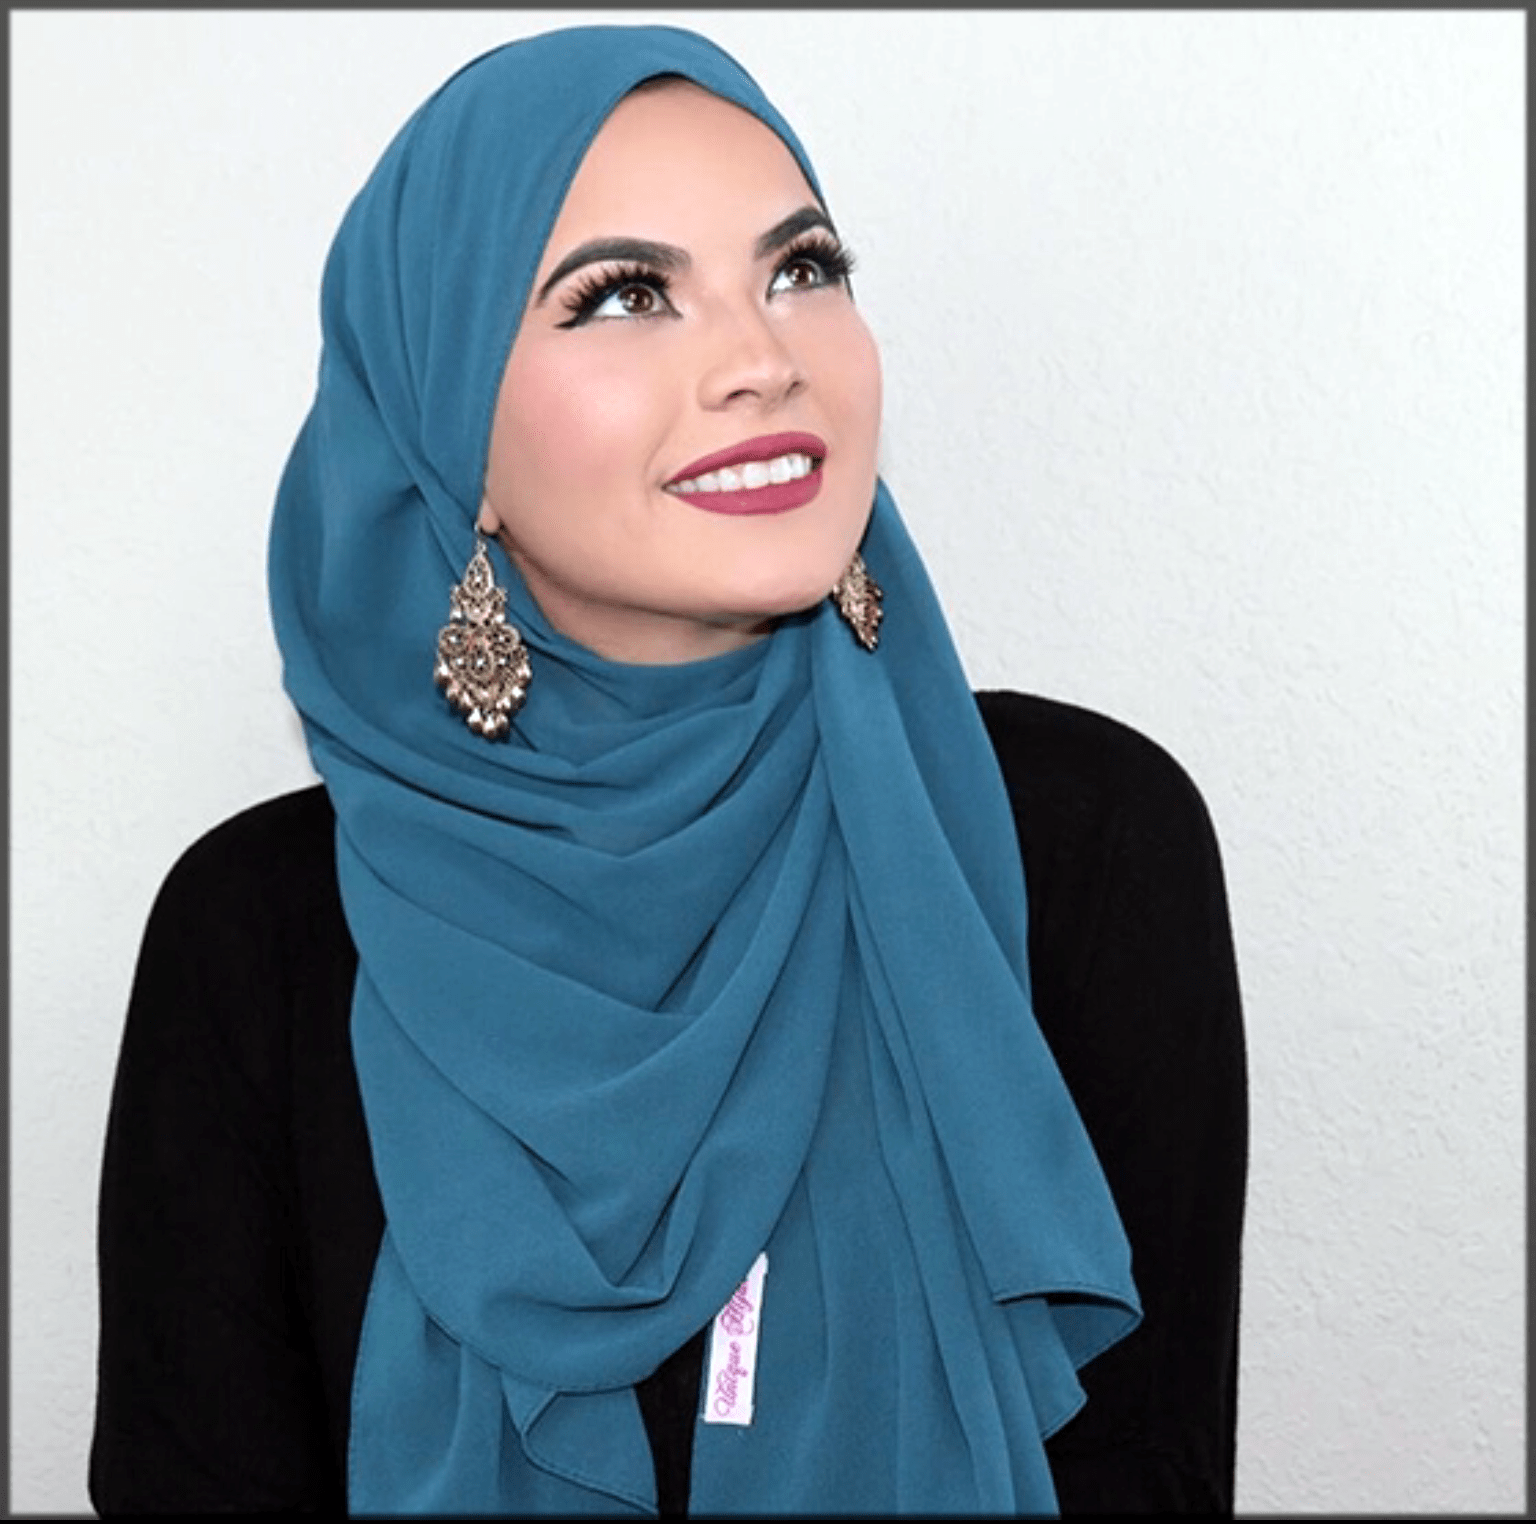 Хиджаб с платком